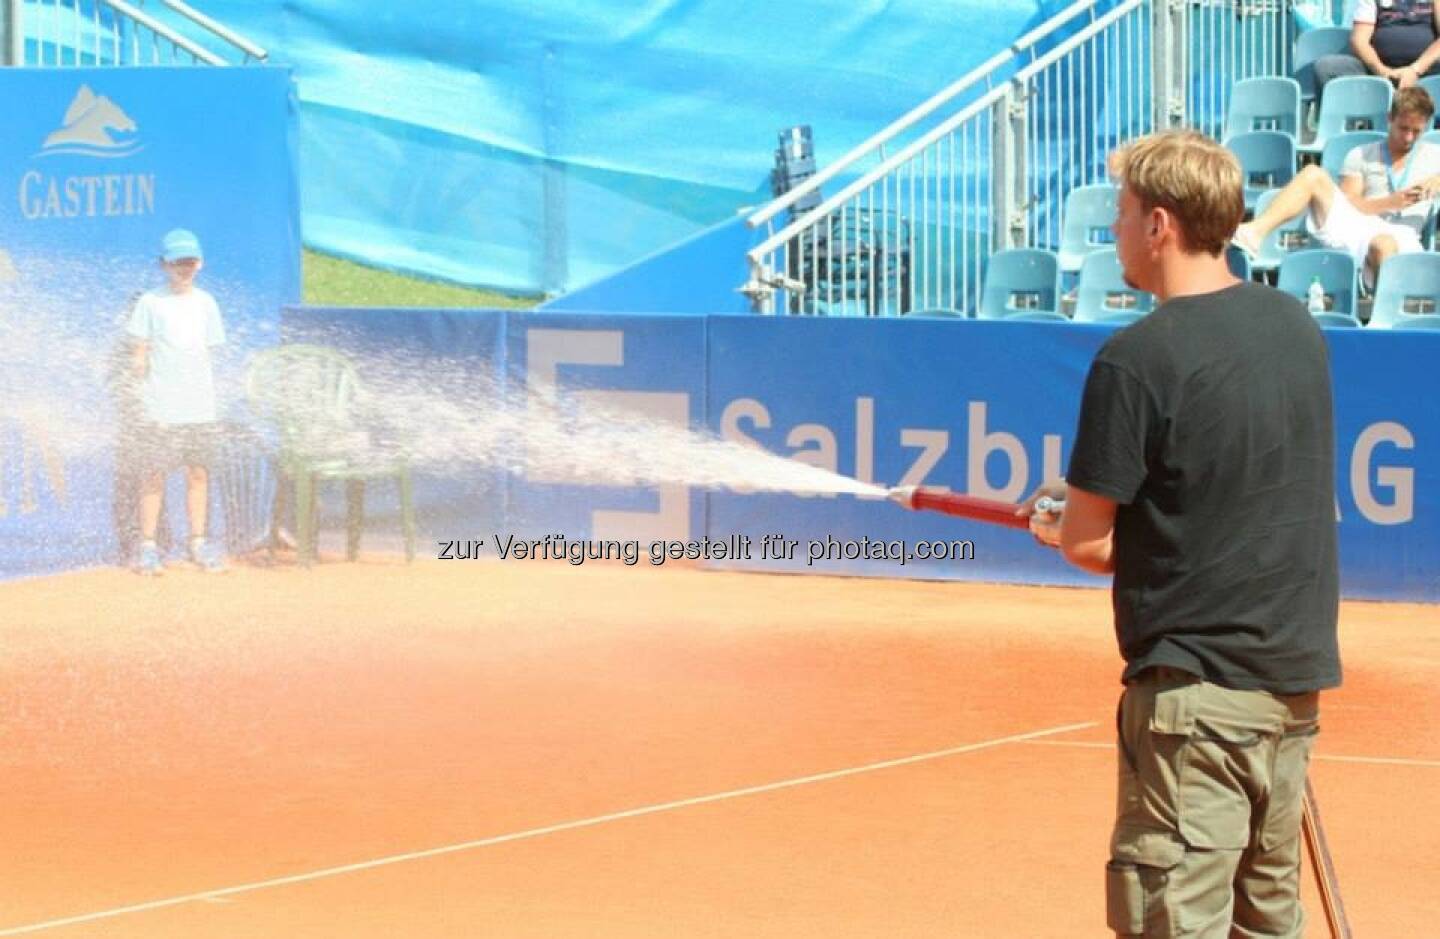 Nürnberger Gastein Ladies, Tennis - mehr unter https://www.facebook.com/GasteinLadies